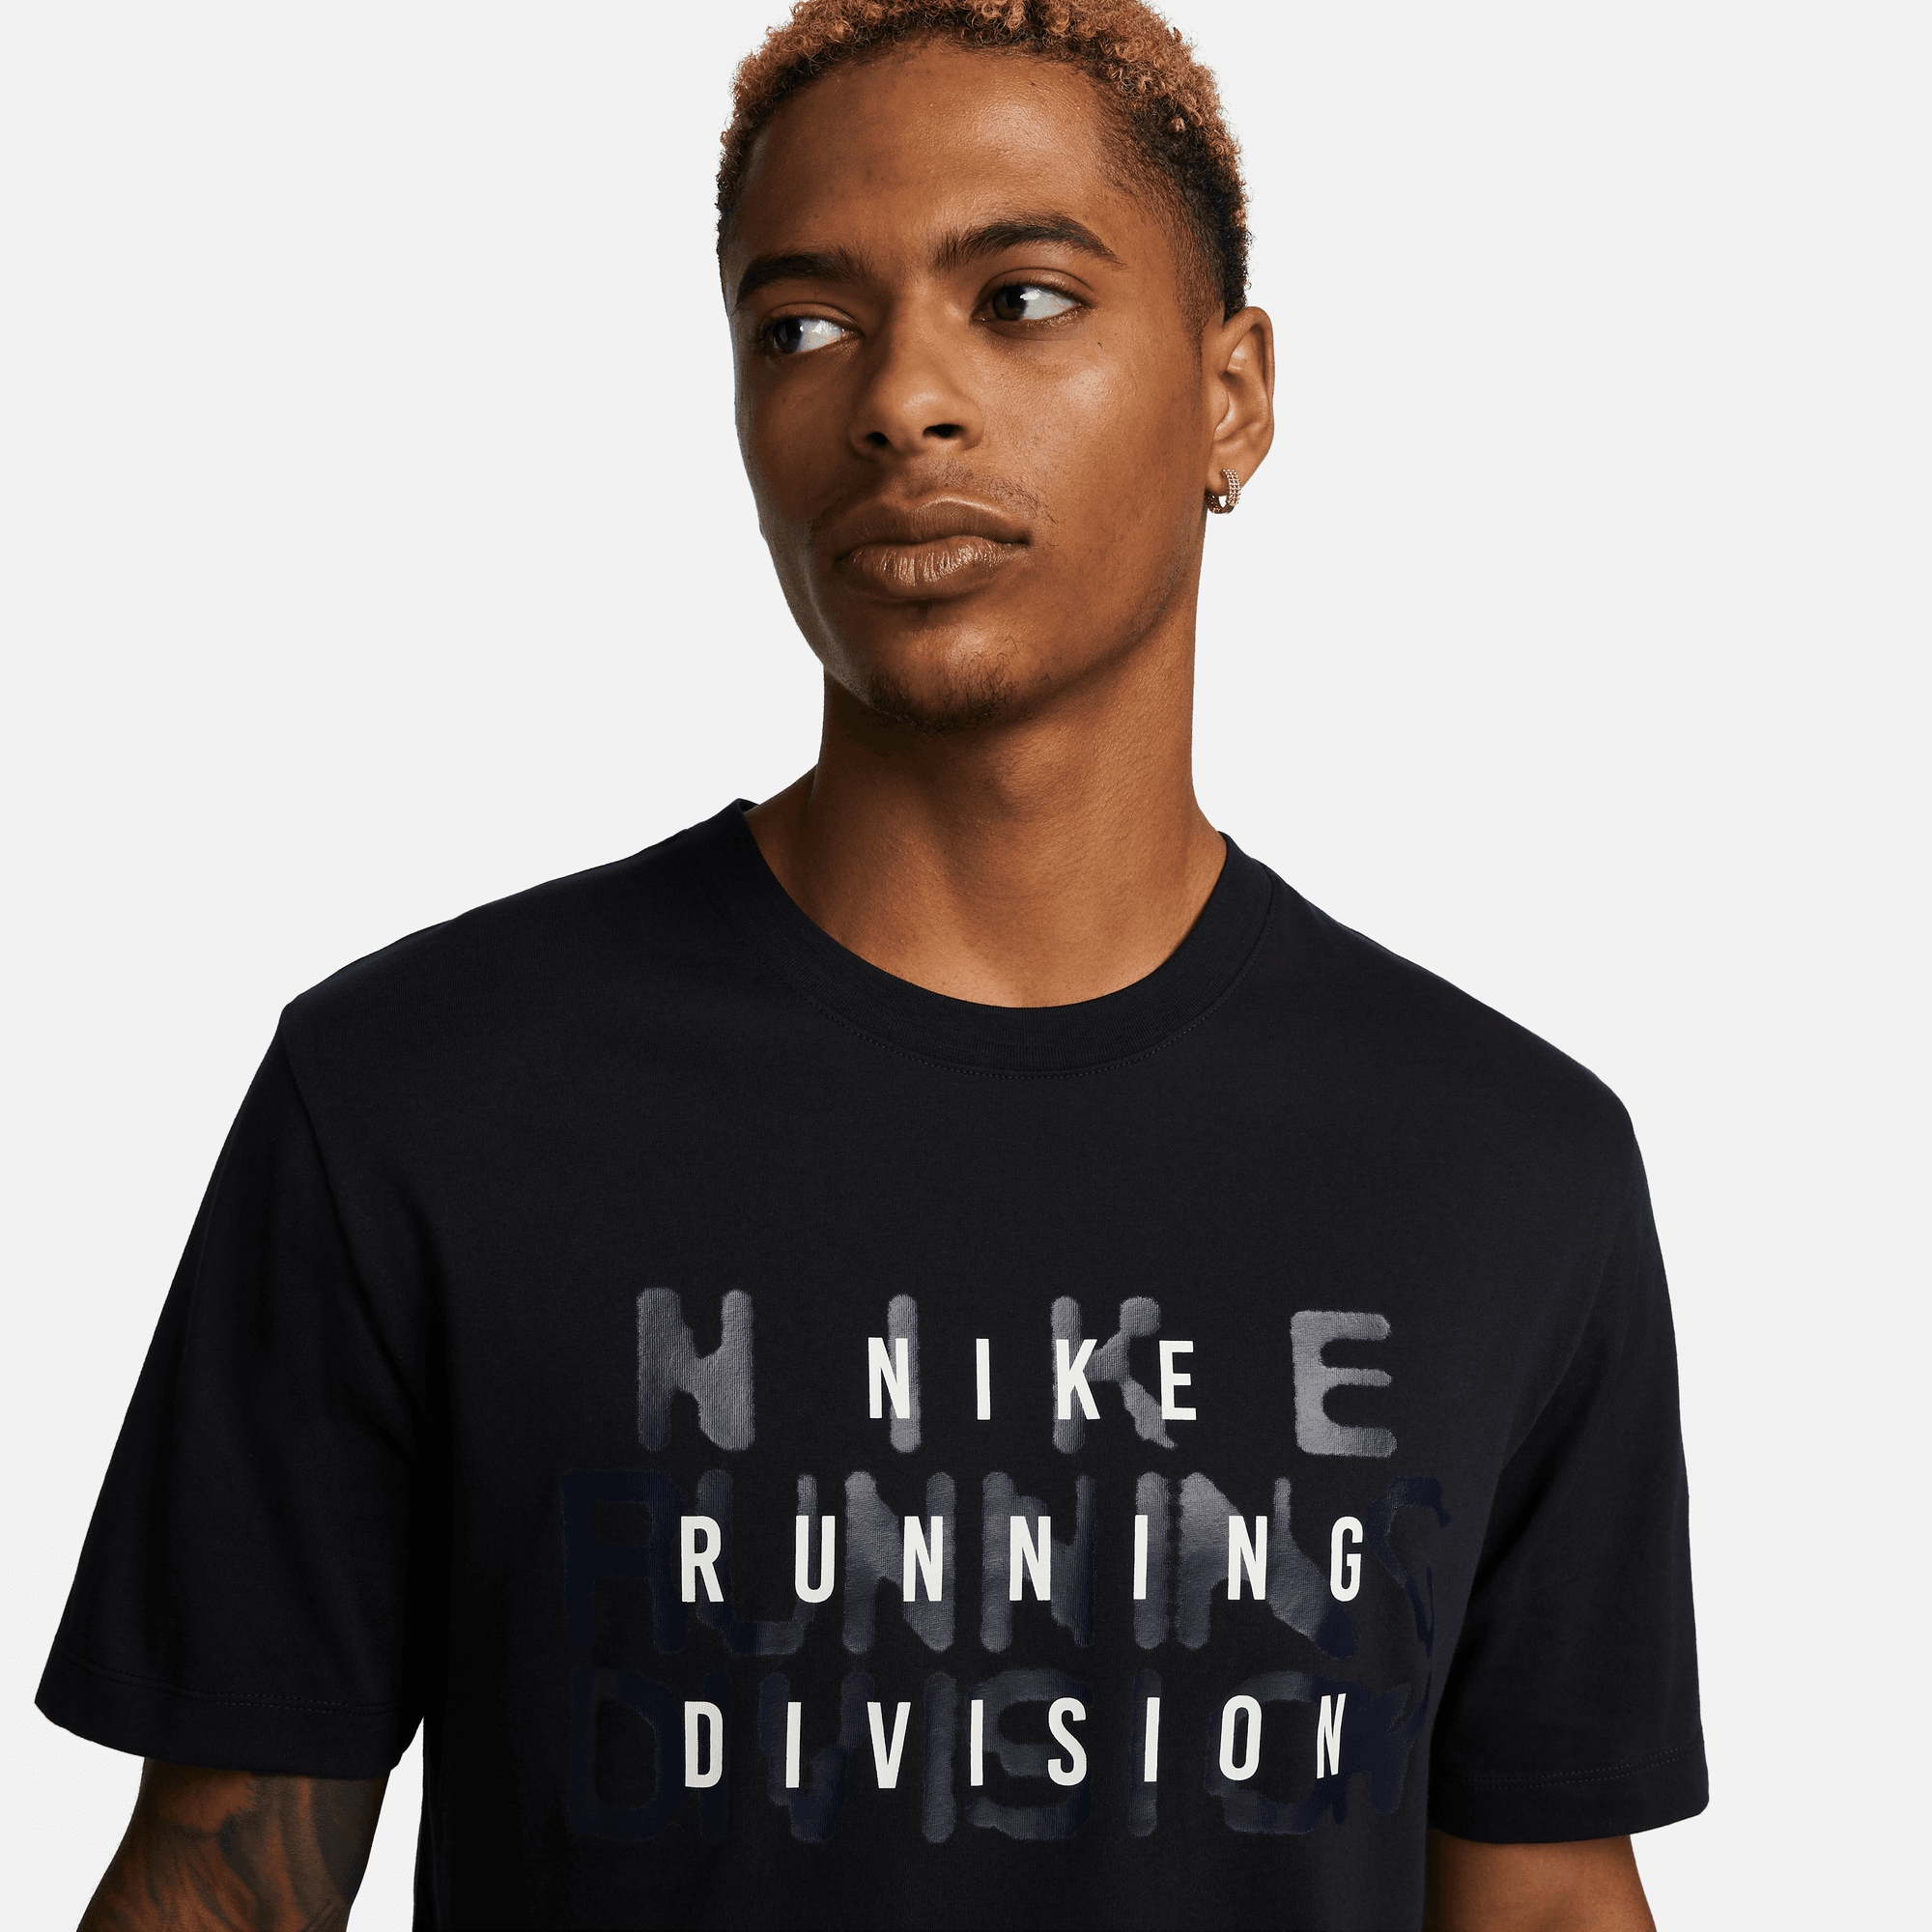 kaufen OTTO online RUN RUNNING bei »DRI-FIT T-SHIRT« Laufshirt MEN\'S Nike DIVISION